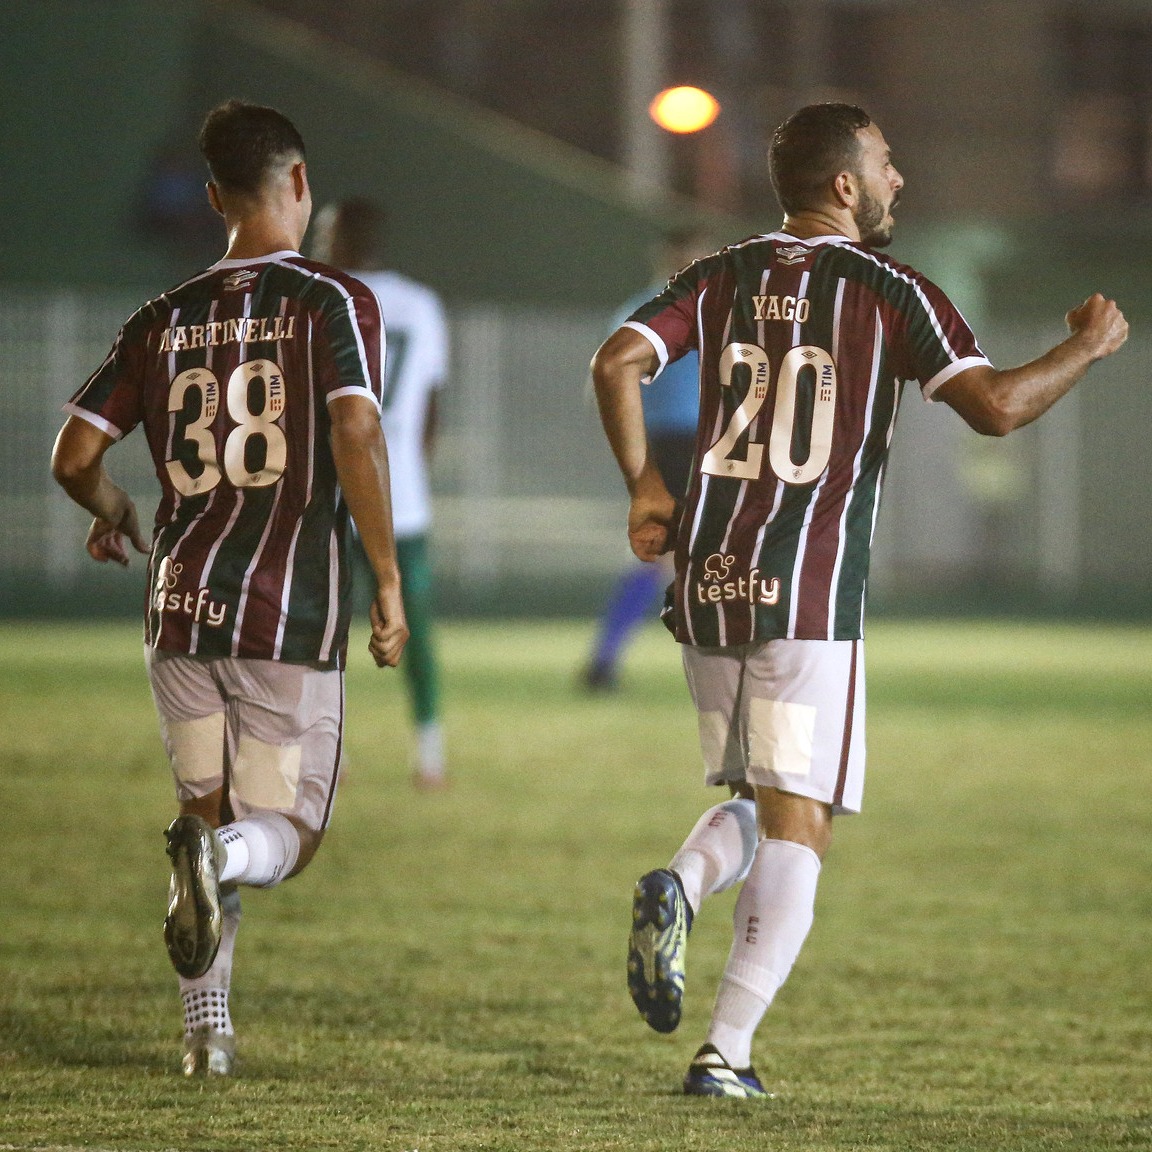 Plataforma de palpites renova patrocínio com o Campeonato Paulista para 2024